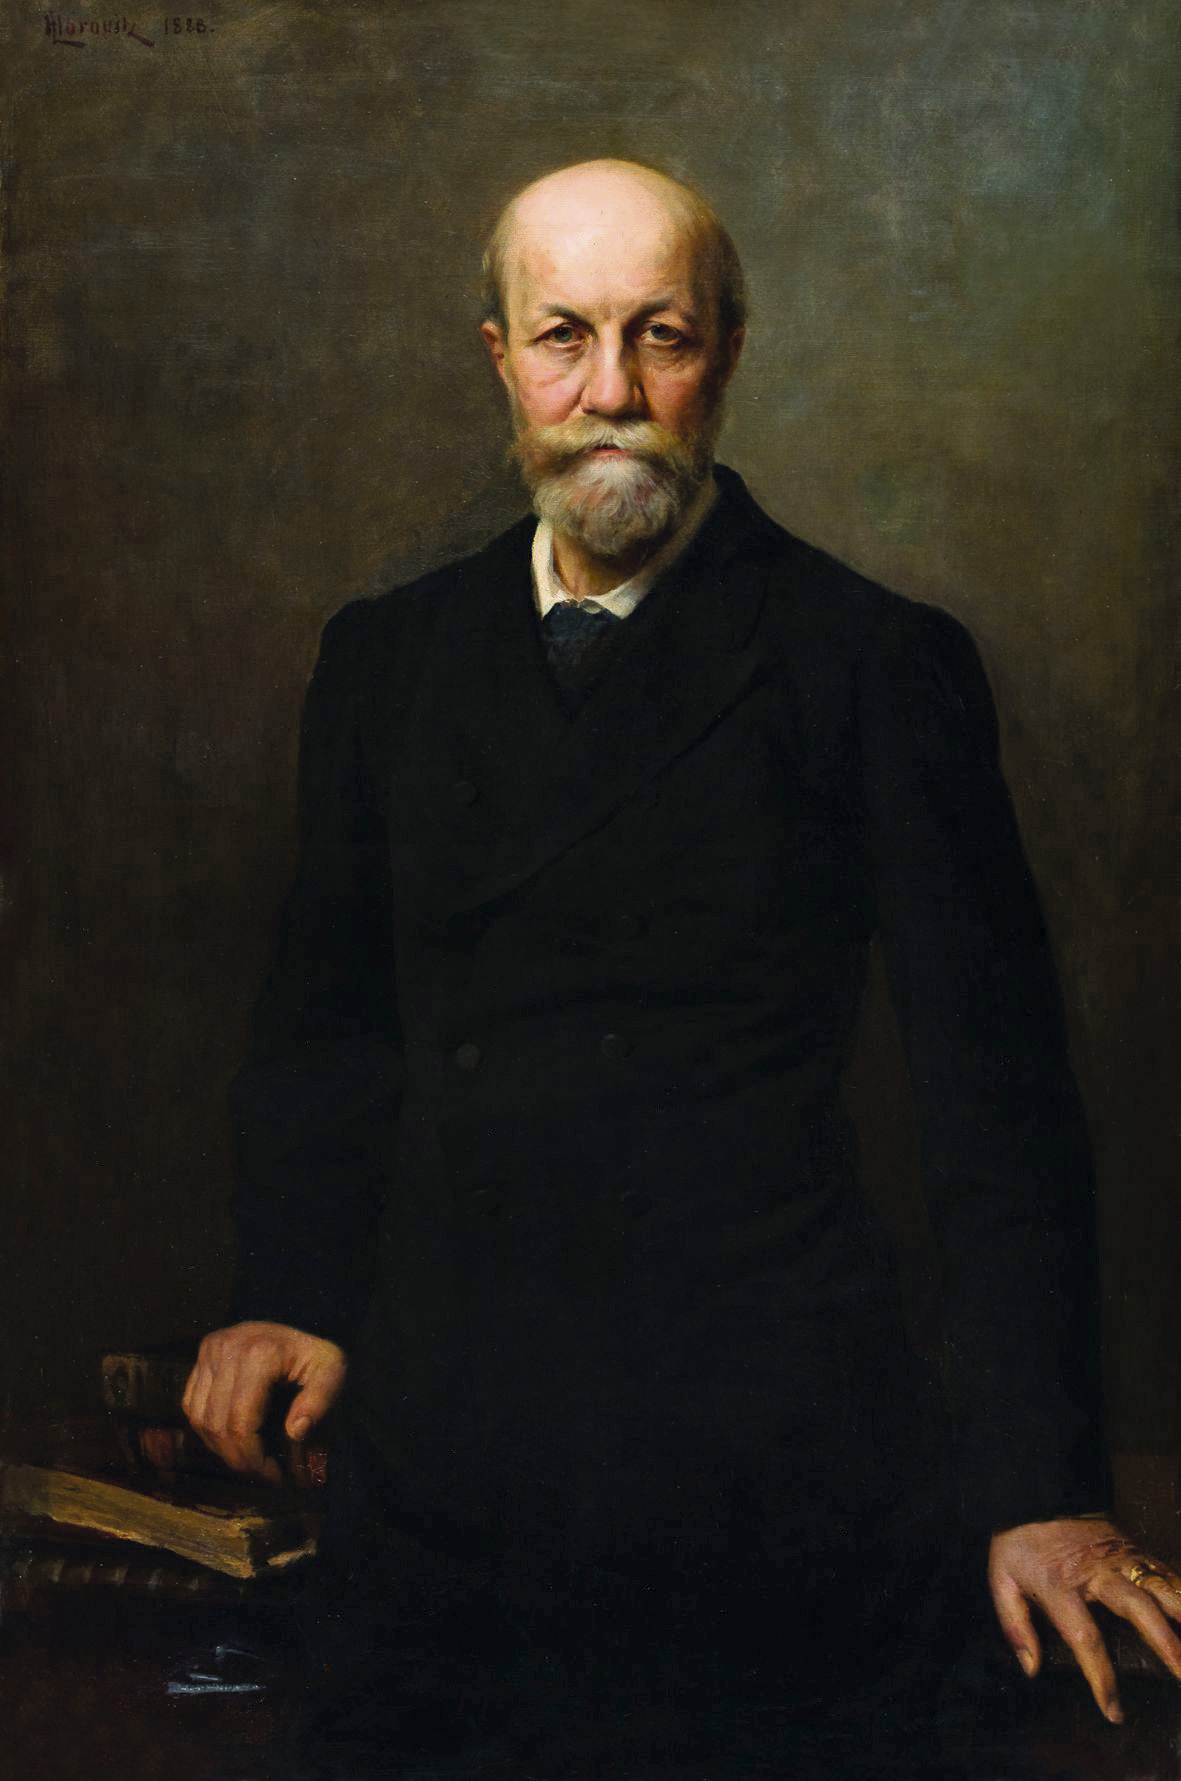 Leopold Horovitz: Portrét spisovateľa Móra Jókaiho. 1888. Olej, plátno. Petőfiho múzeum literatúry, Budapešť